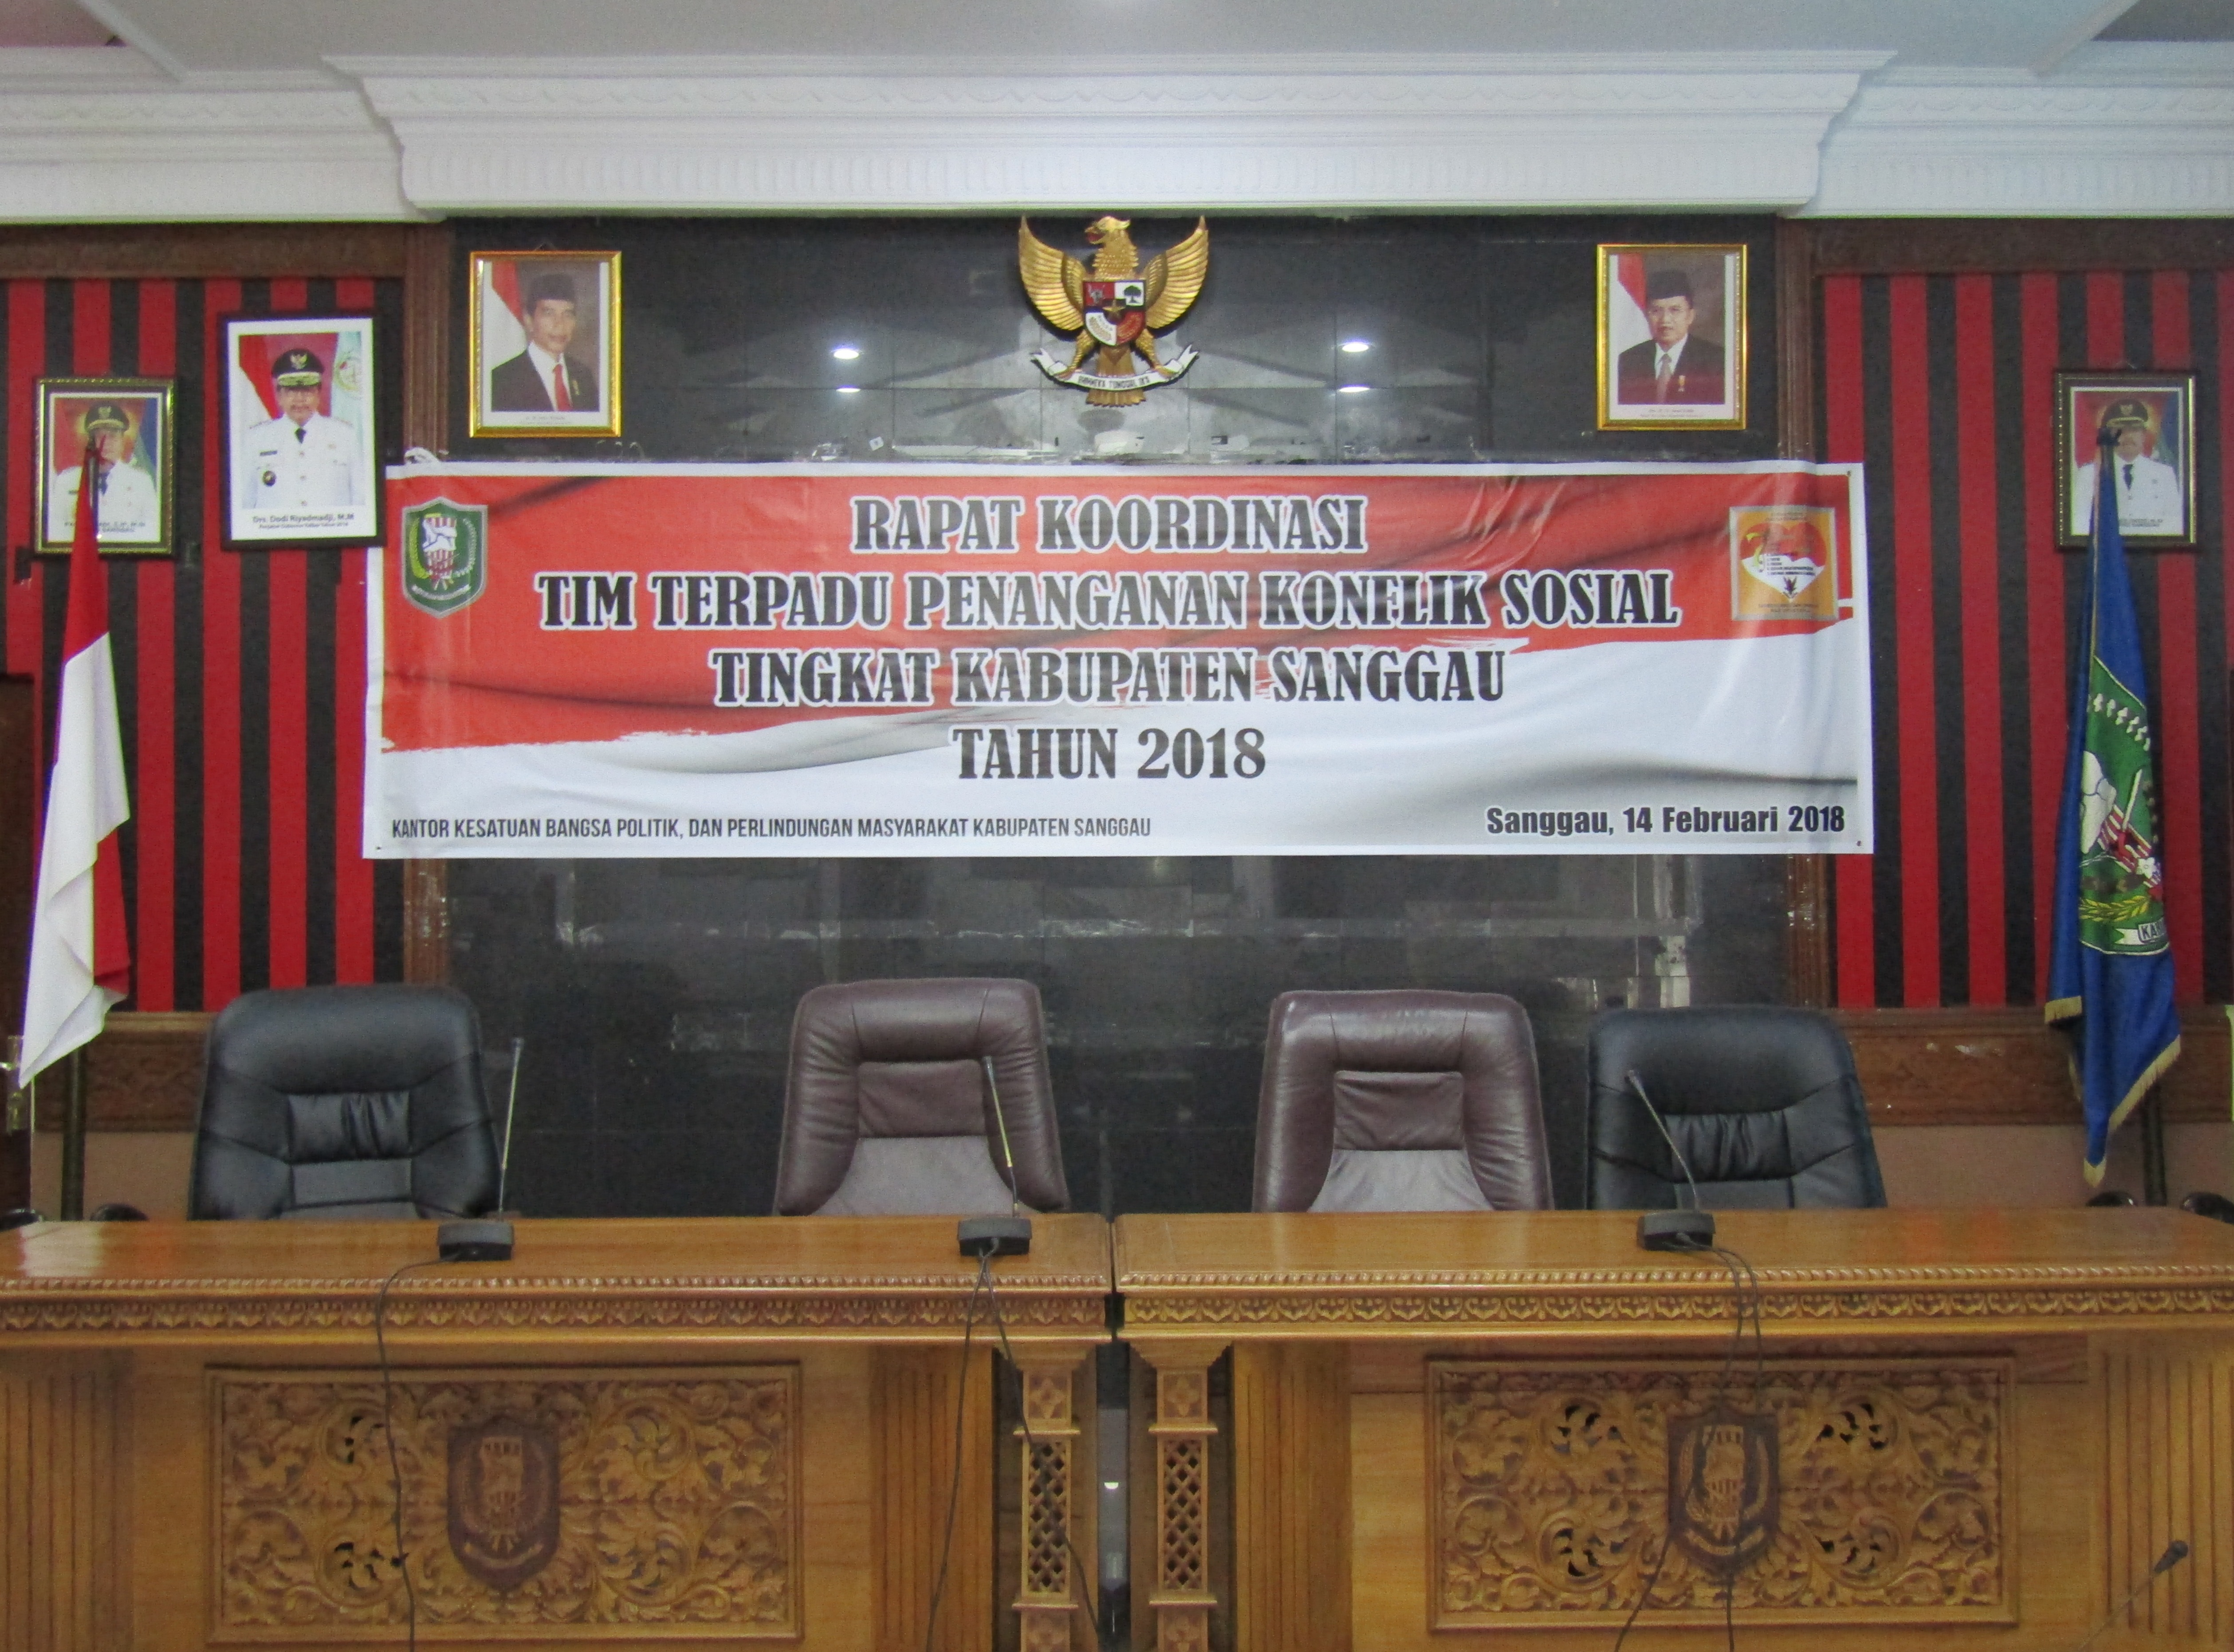 Rapat Koordinasi Tim Terpadu Penanganan Konflik Sosial Tingkat Kabupaten Sanggau Tahun 2018